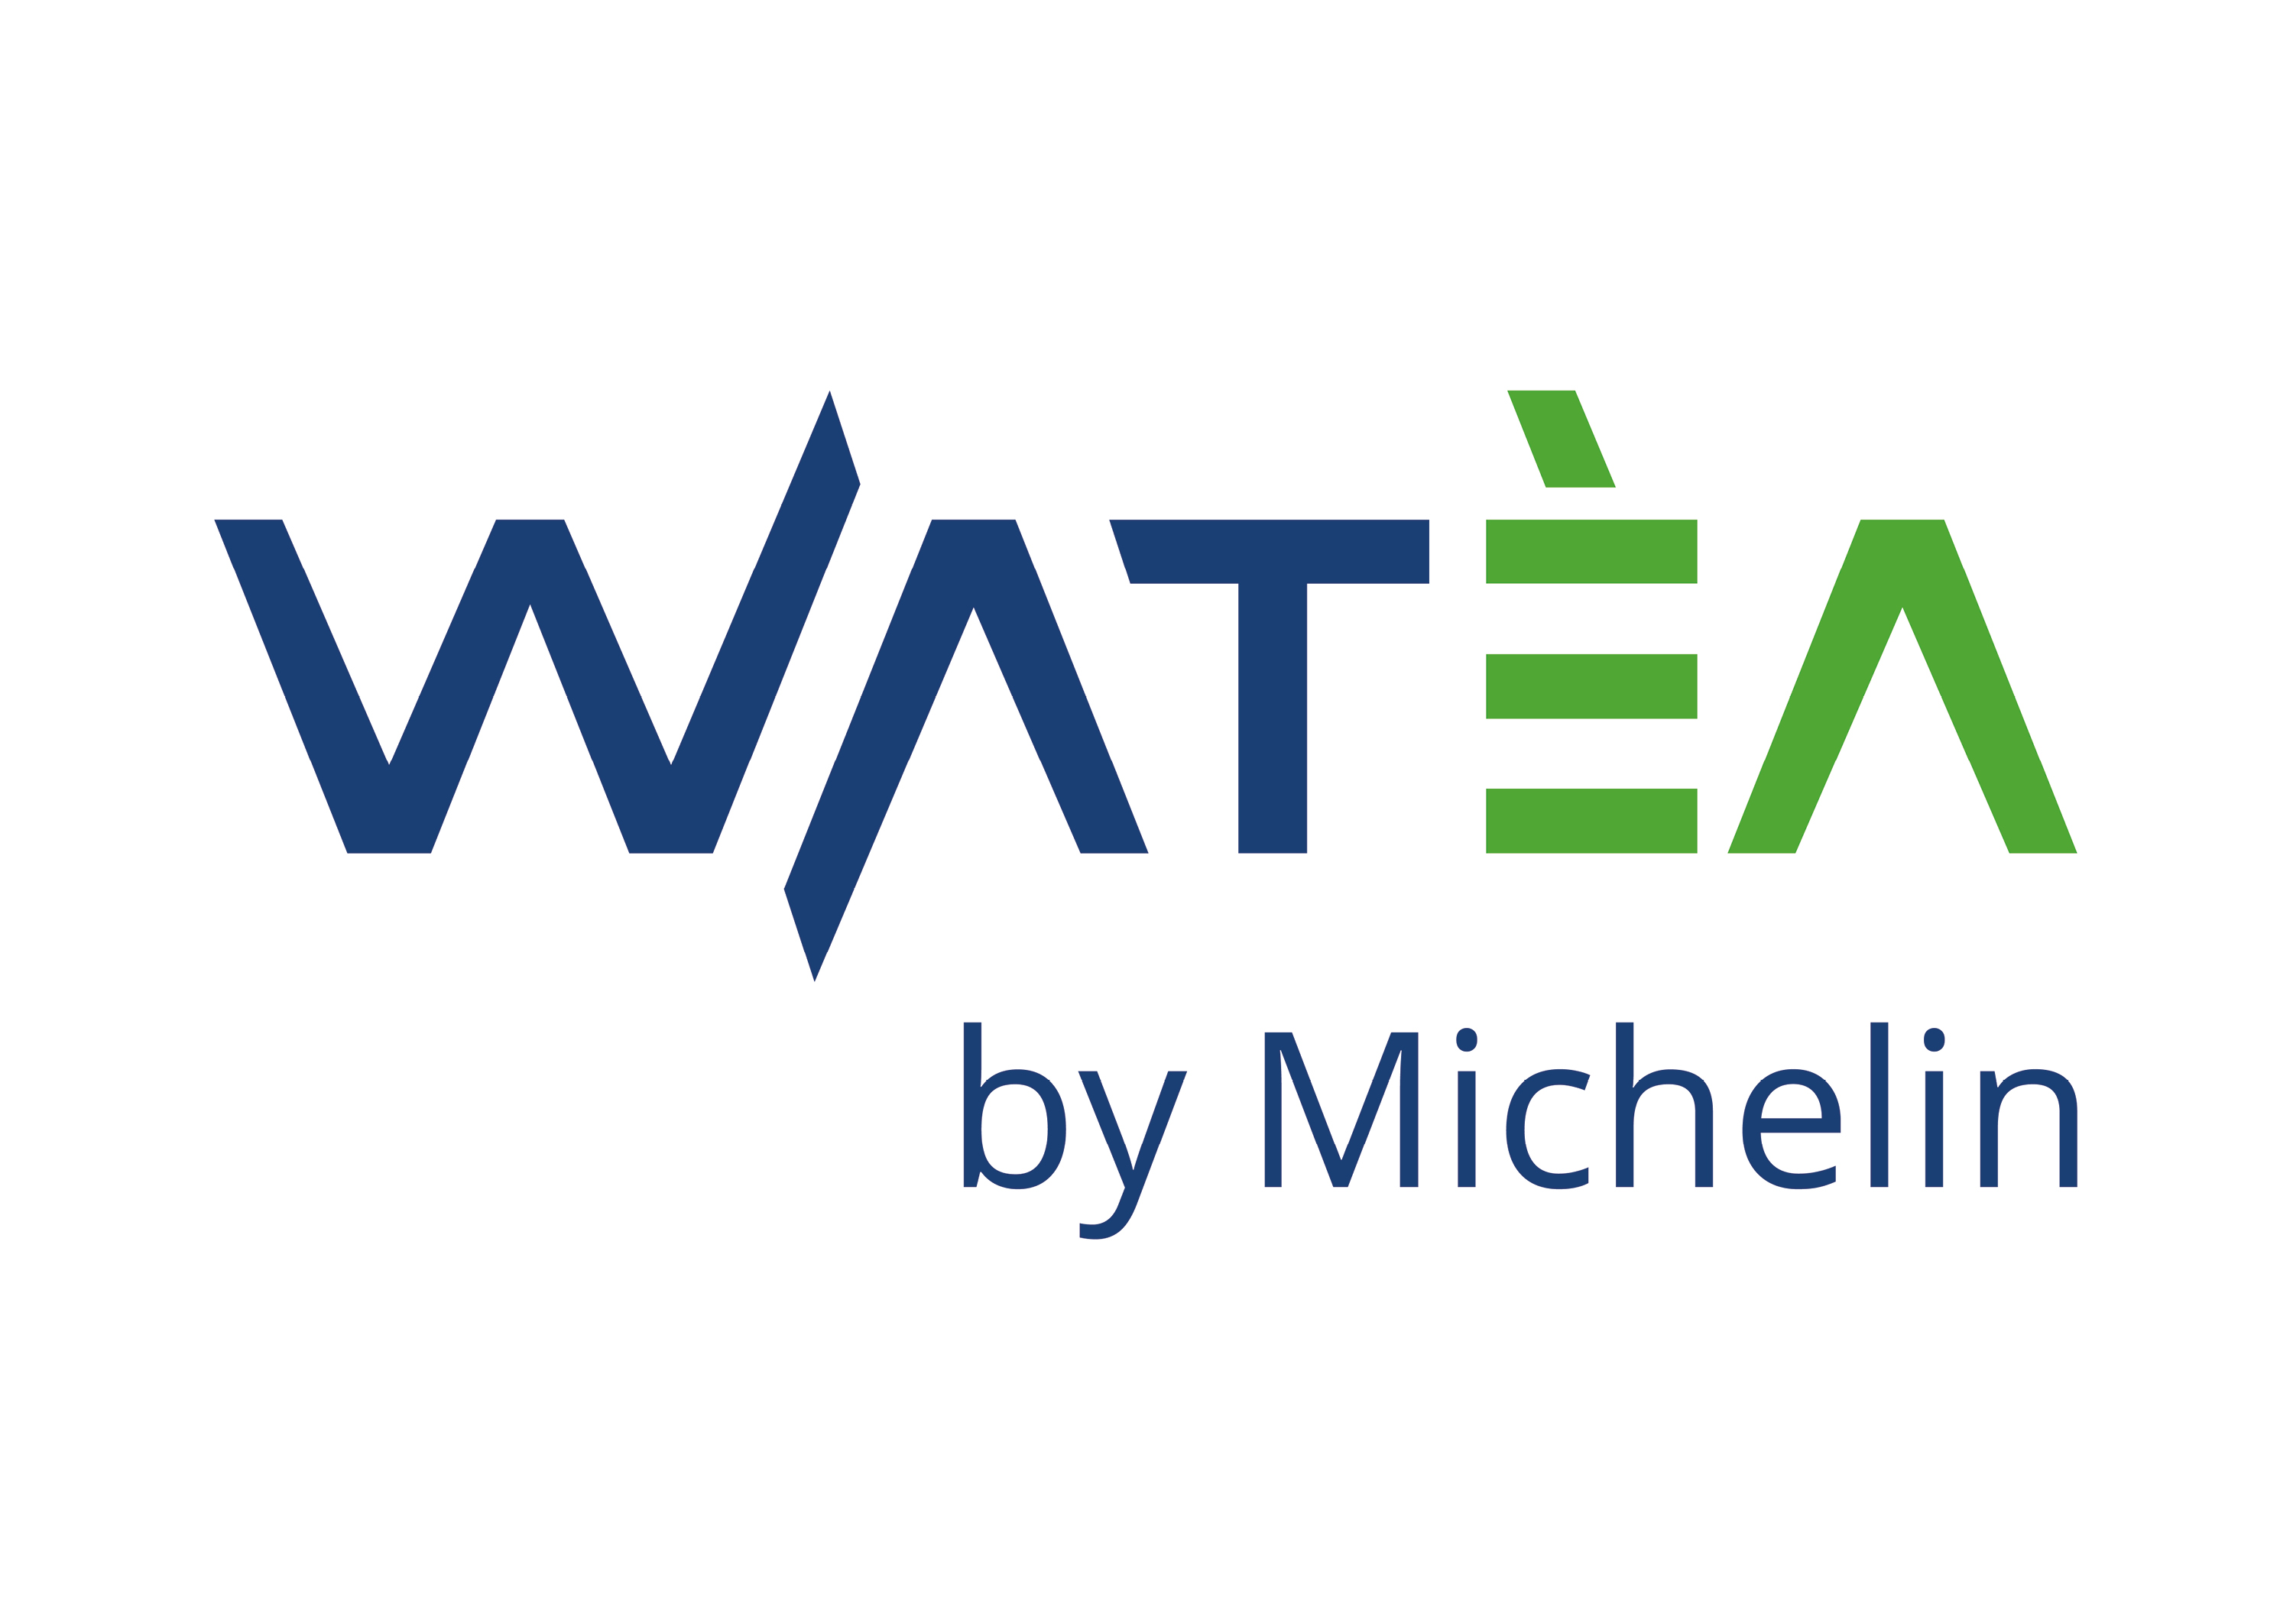 Watèa by Michelin logo